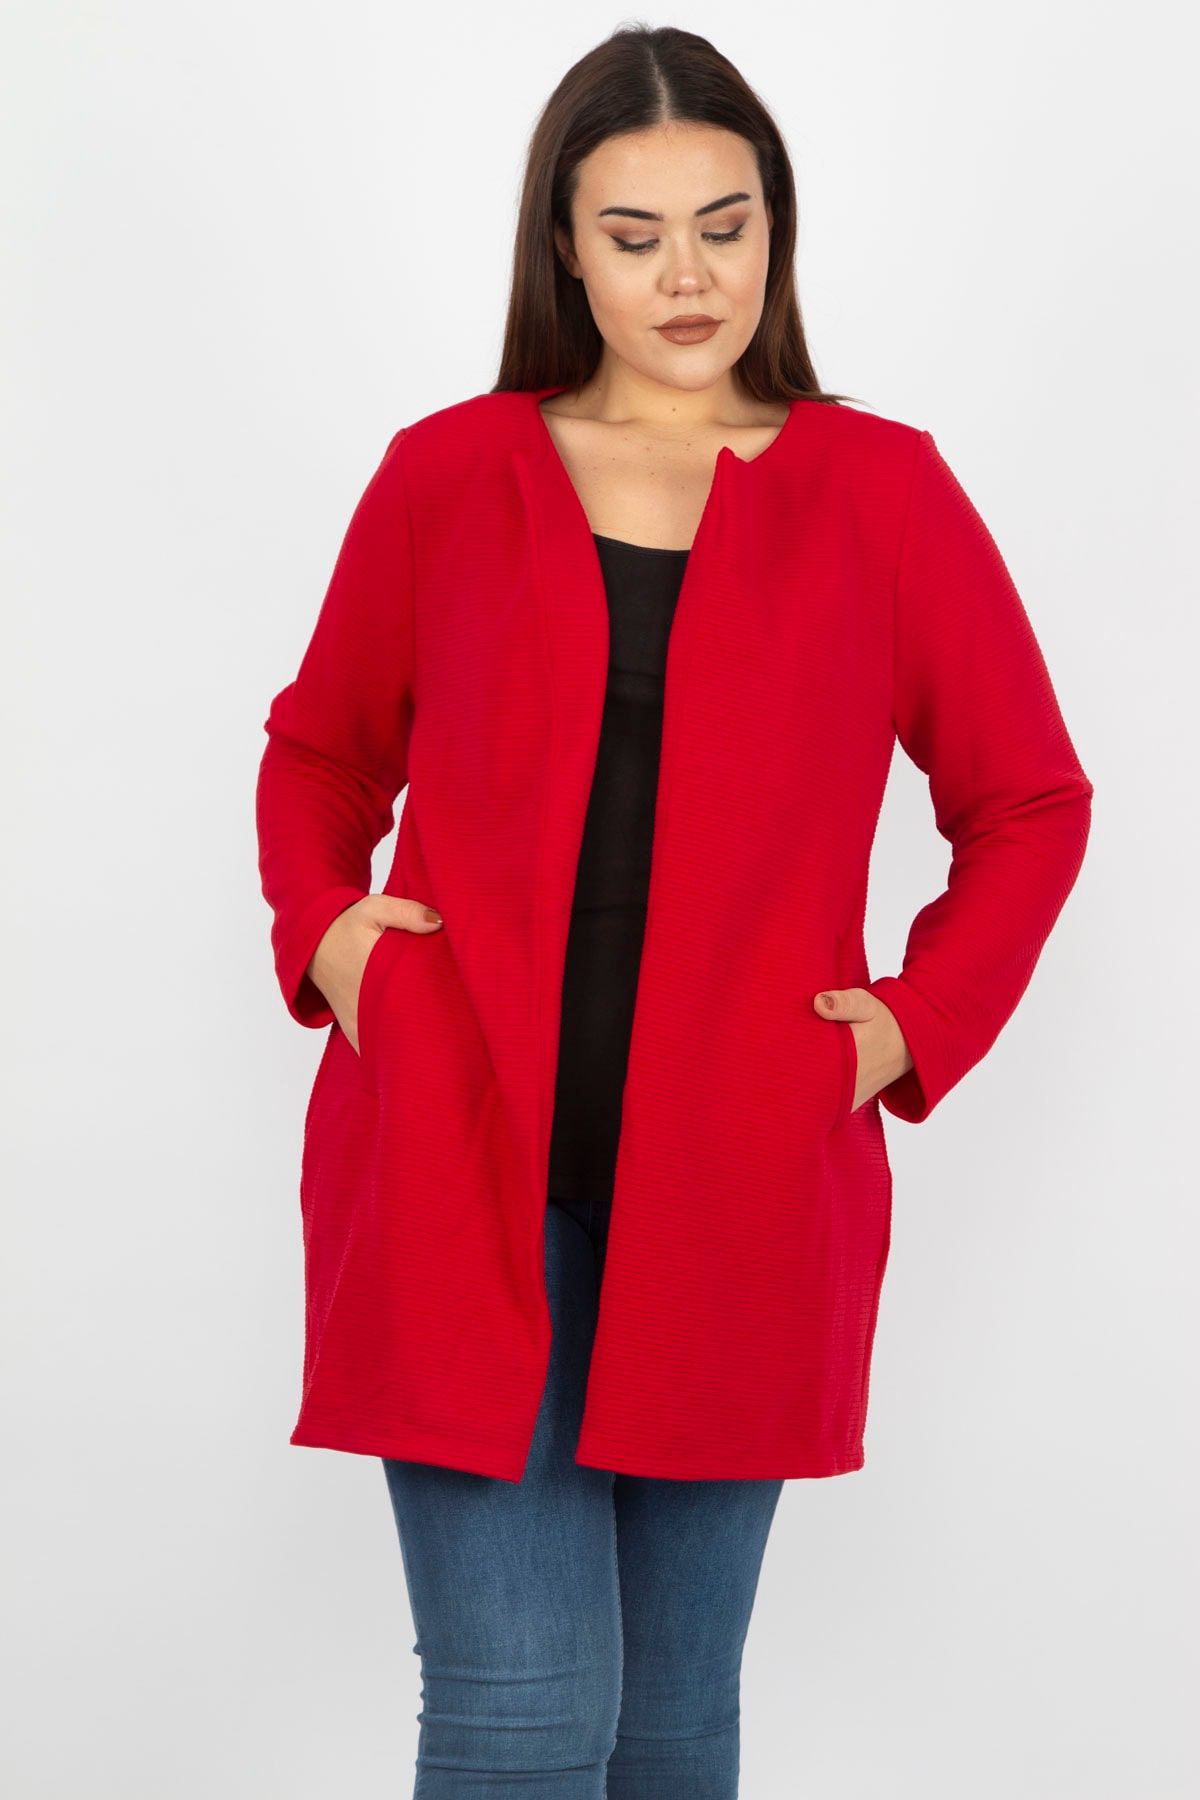 Şans Tekstil Kadın Kırmızı Astarsız Ceket 26a19631